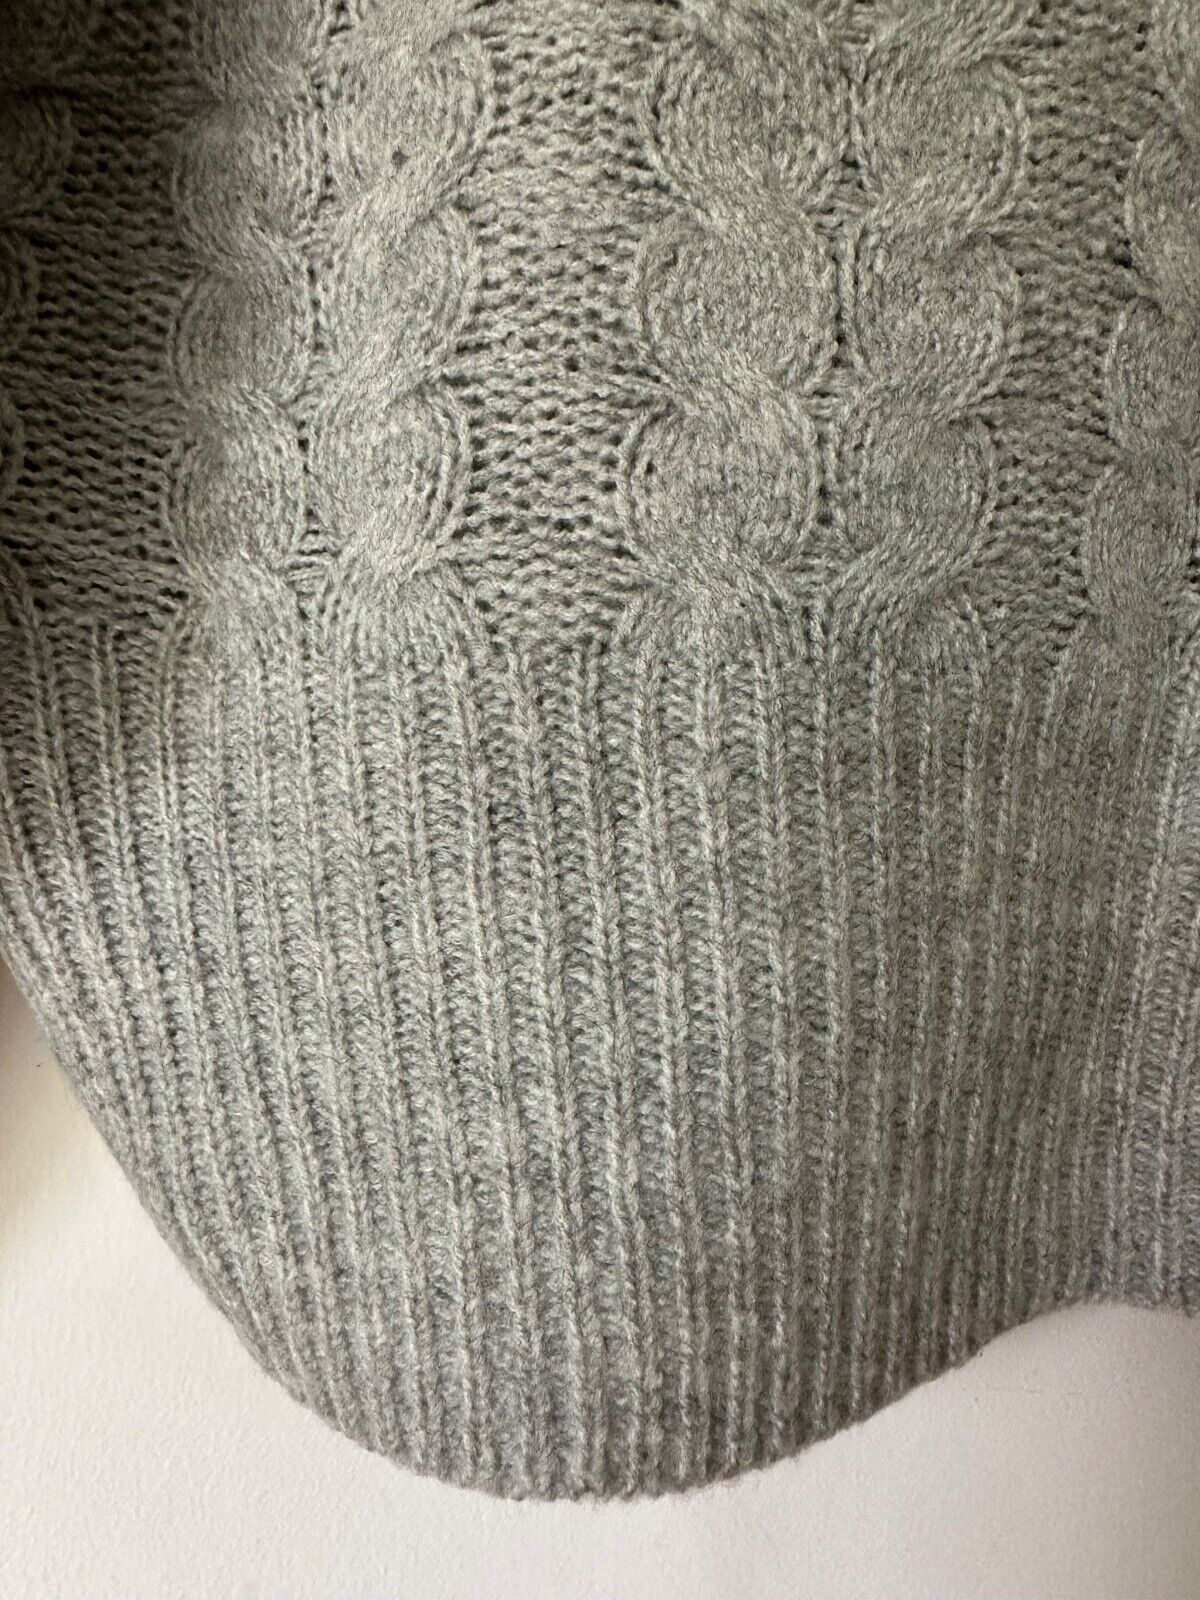 Zara Knitted Jumper Sizes M, L, XL